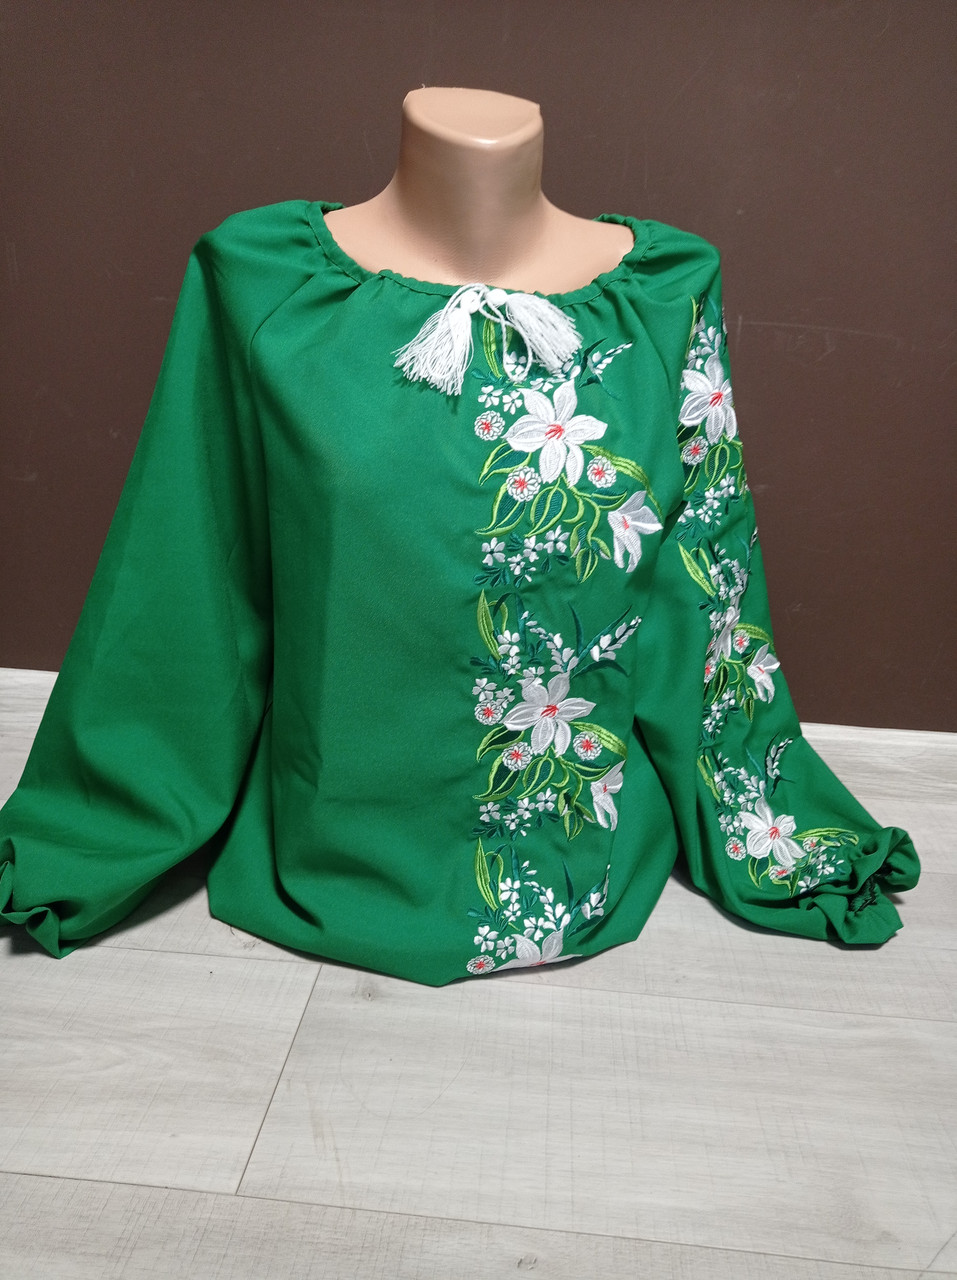 Дизайнерська зелена жіноча вишиванка "Надія" з вишивкою лілій Україна УкраїнаТД 44-64 розміри